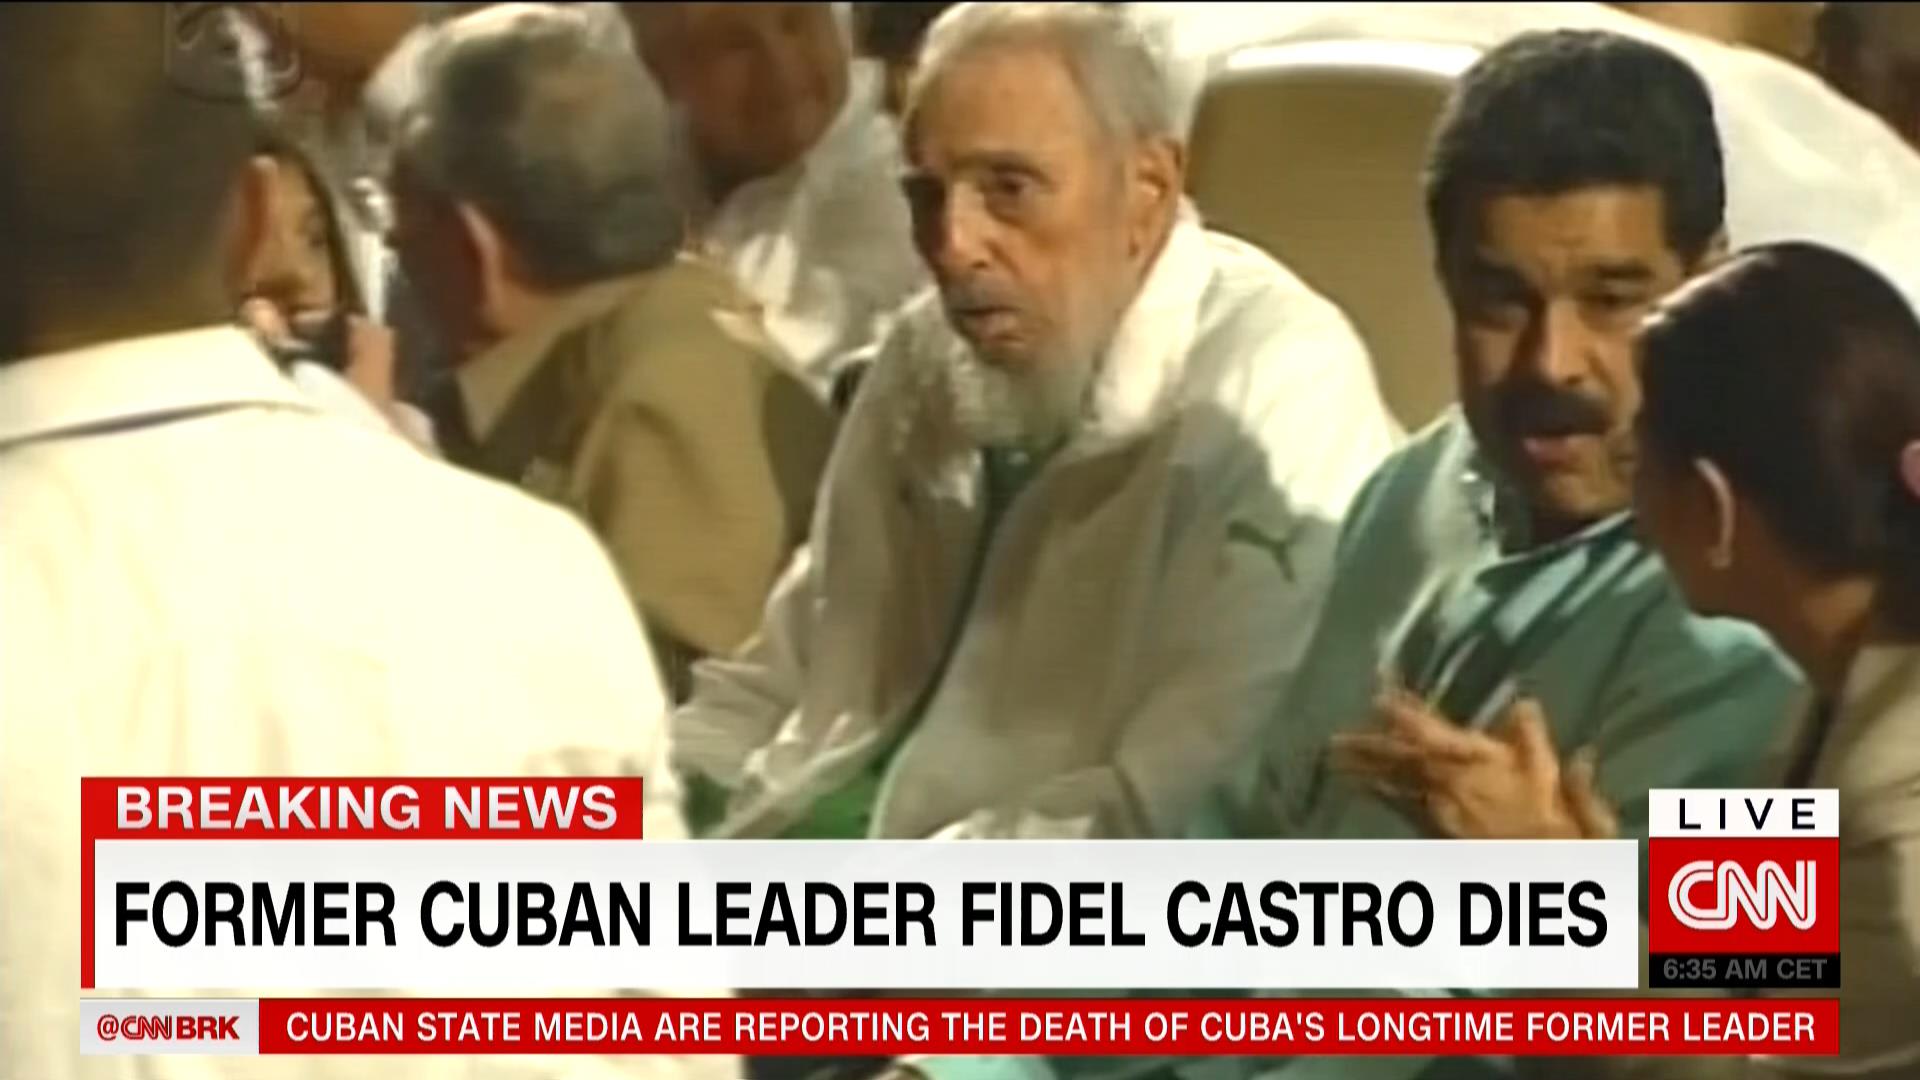 وفاة رئيس كوبا السابق فيديل كاسترو عن عمر يناهز 90 عاماً